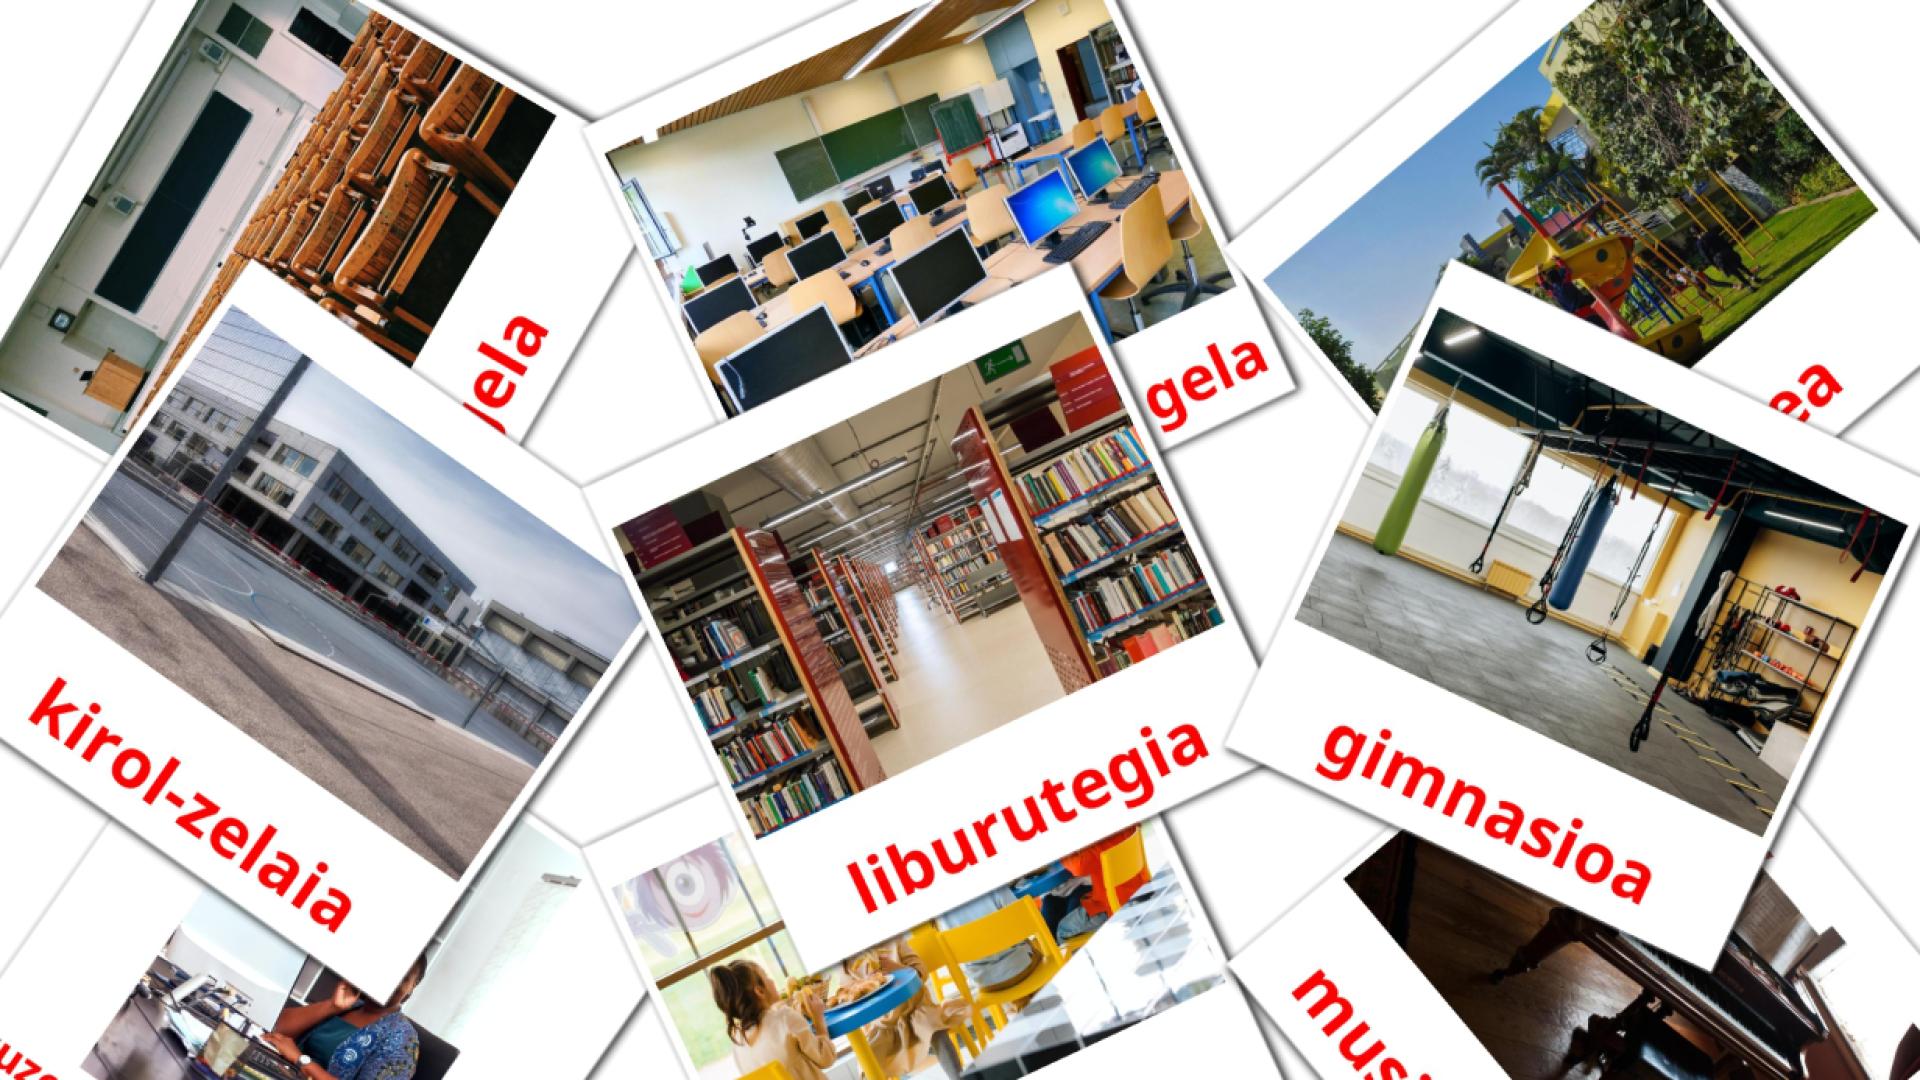 Edificio scolastico - Schede di vocabolario basco